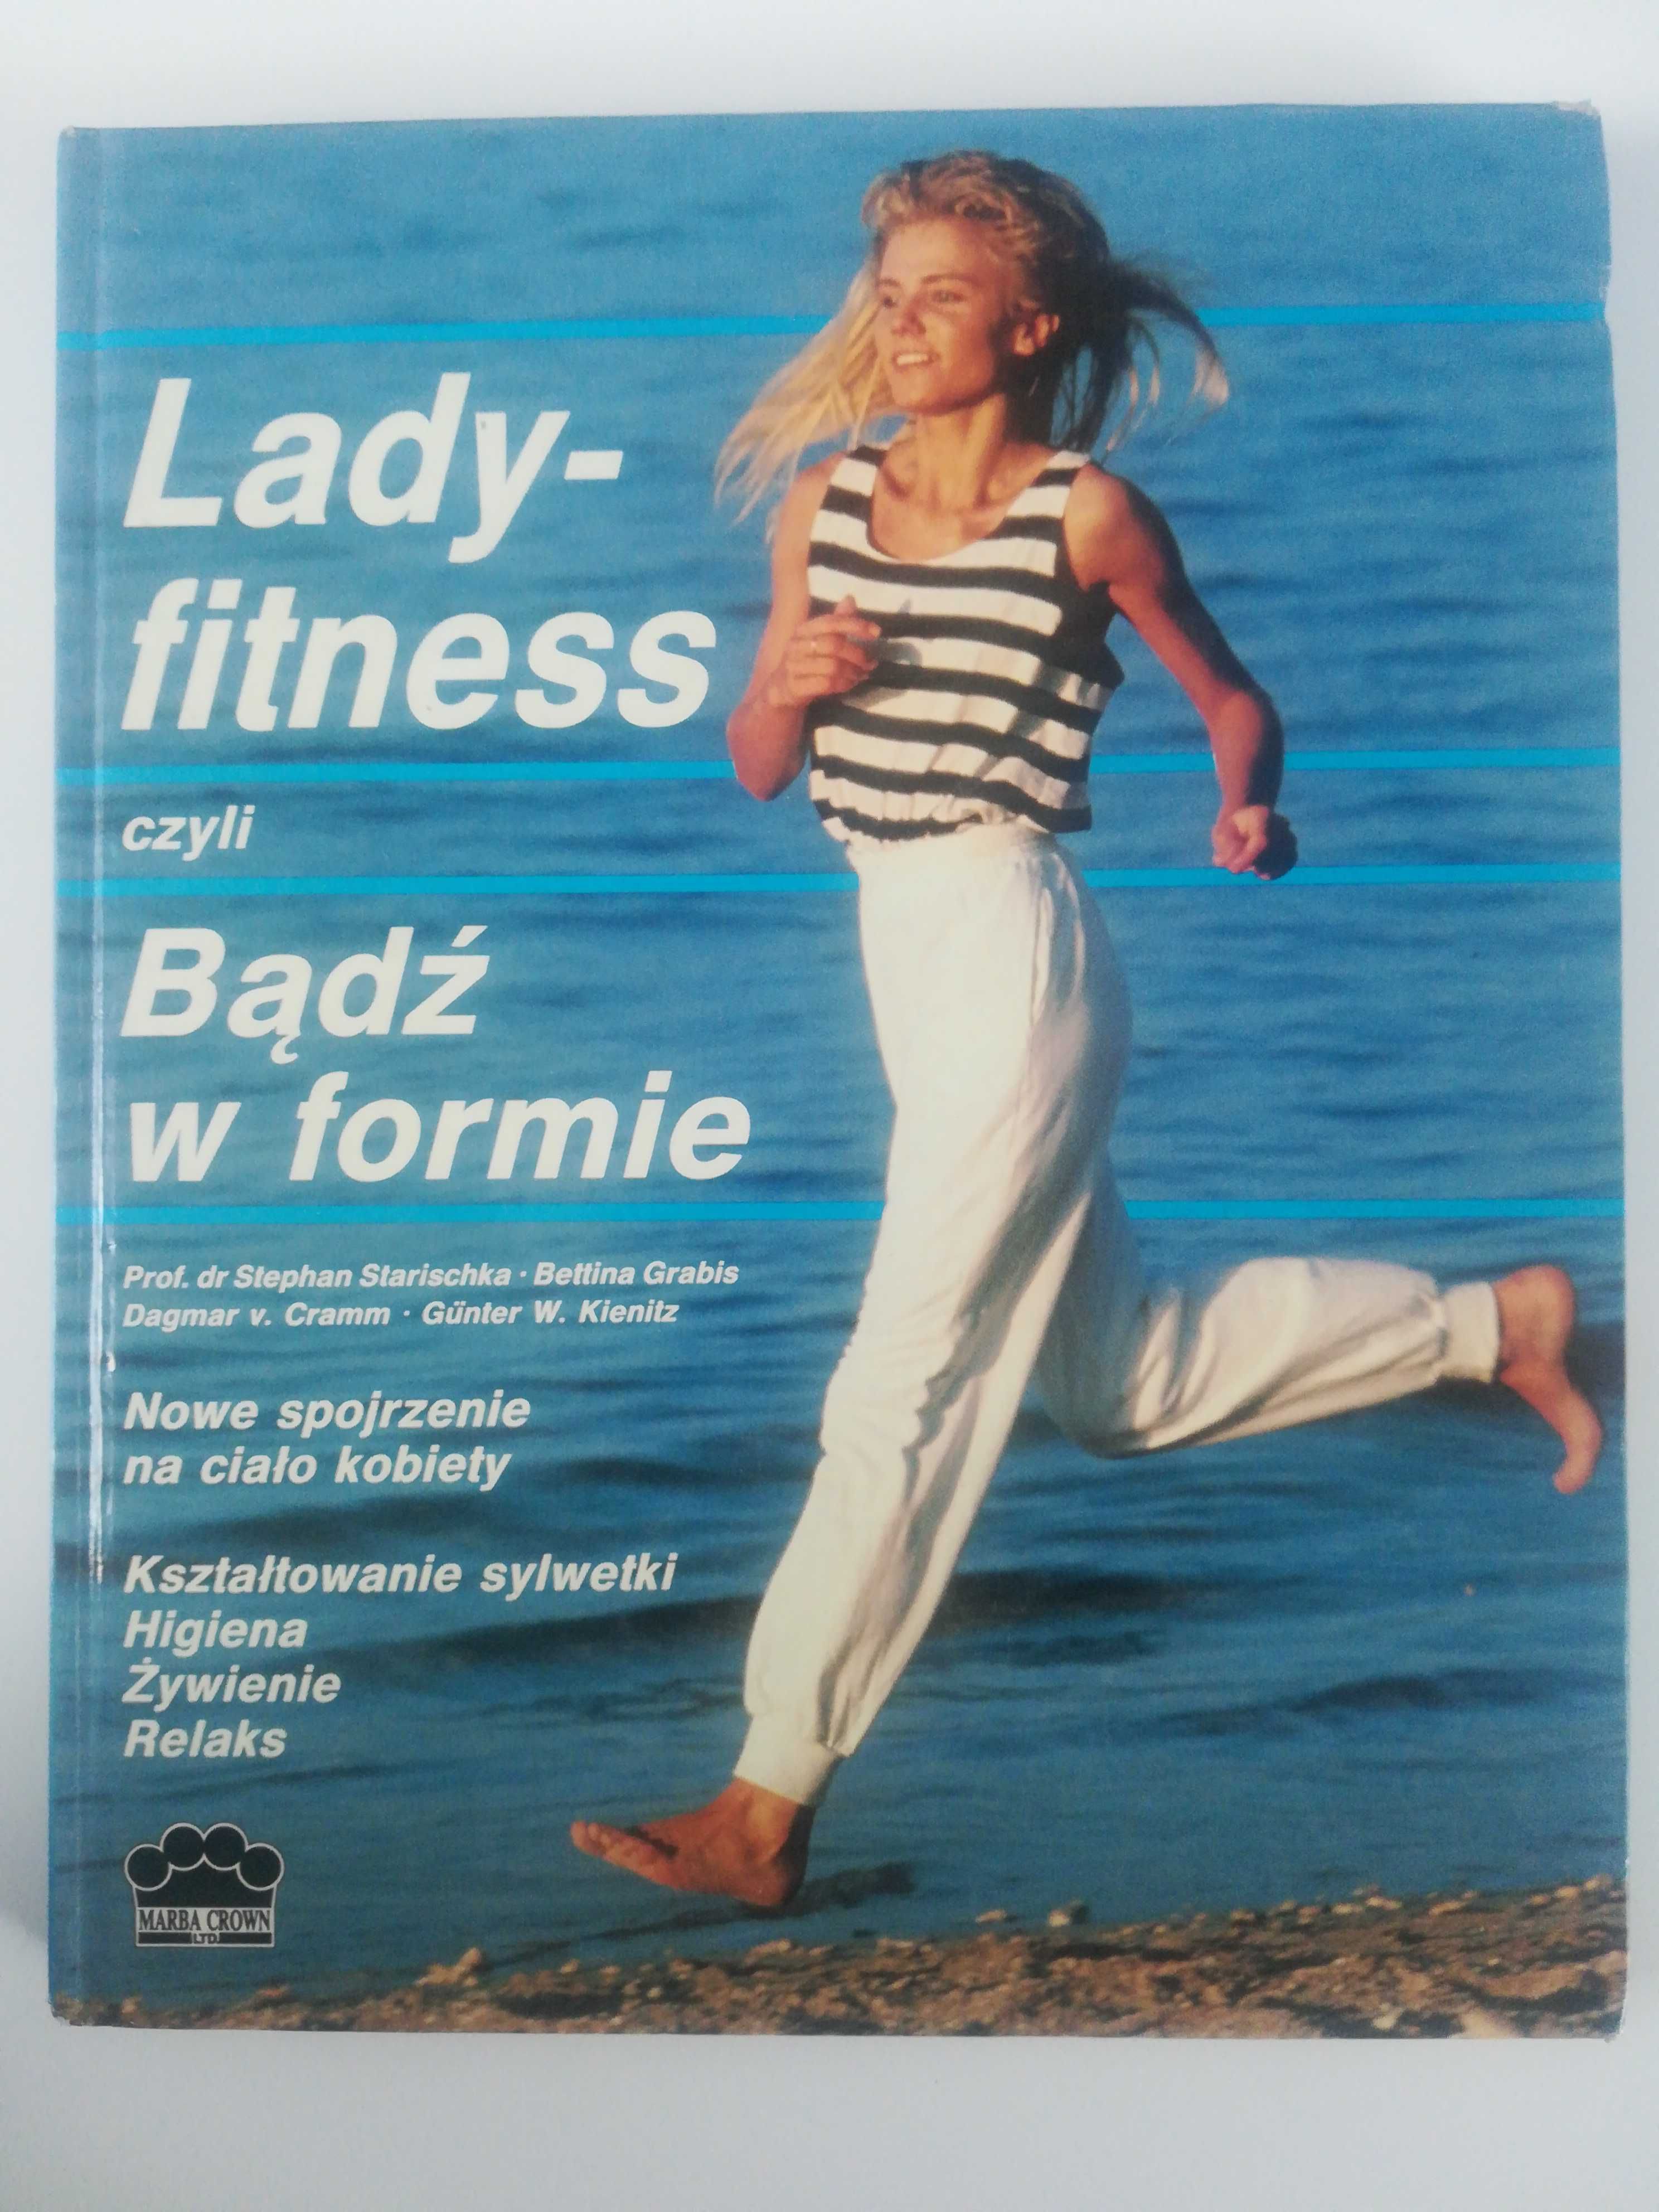 Lady- fitness czyli bądź w formie